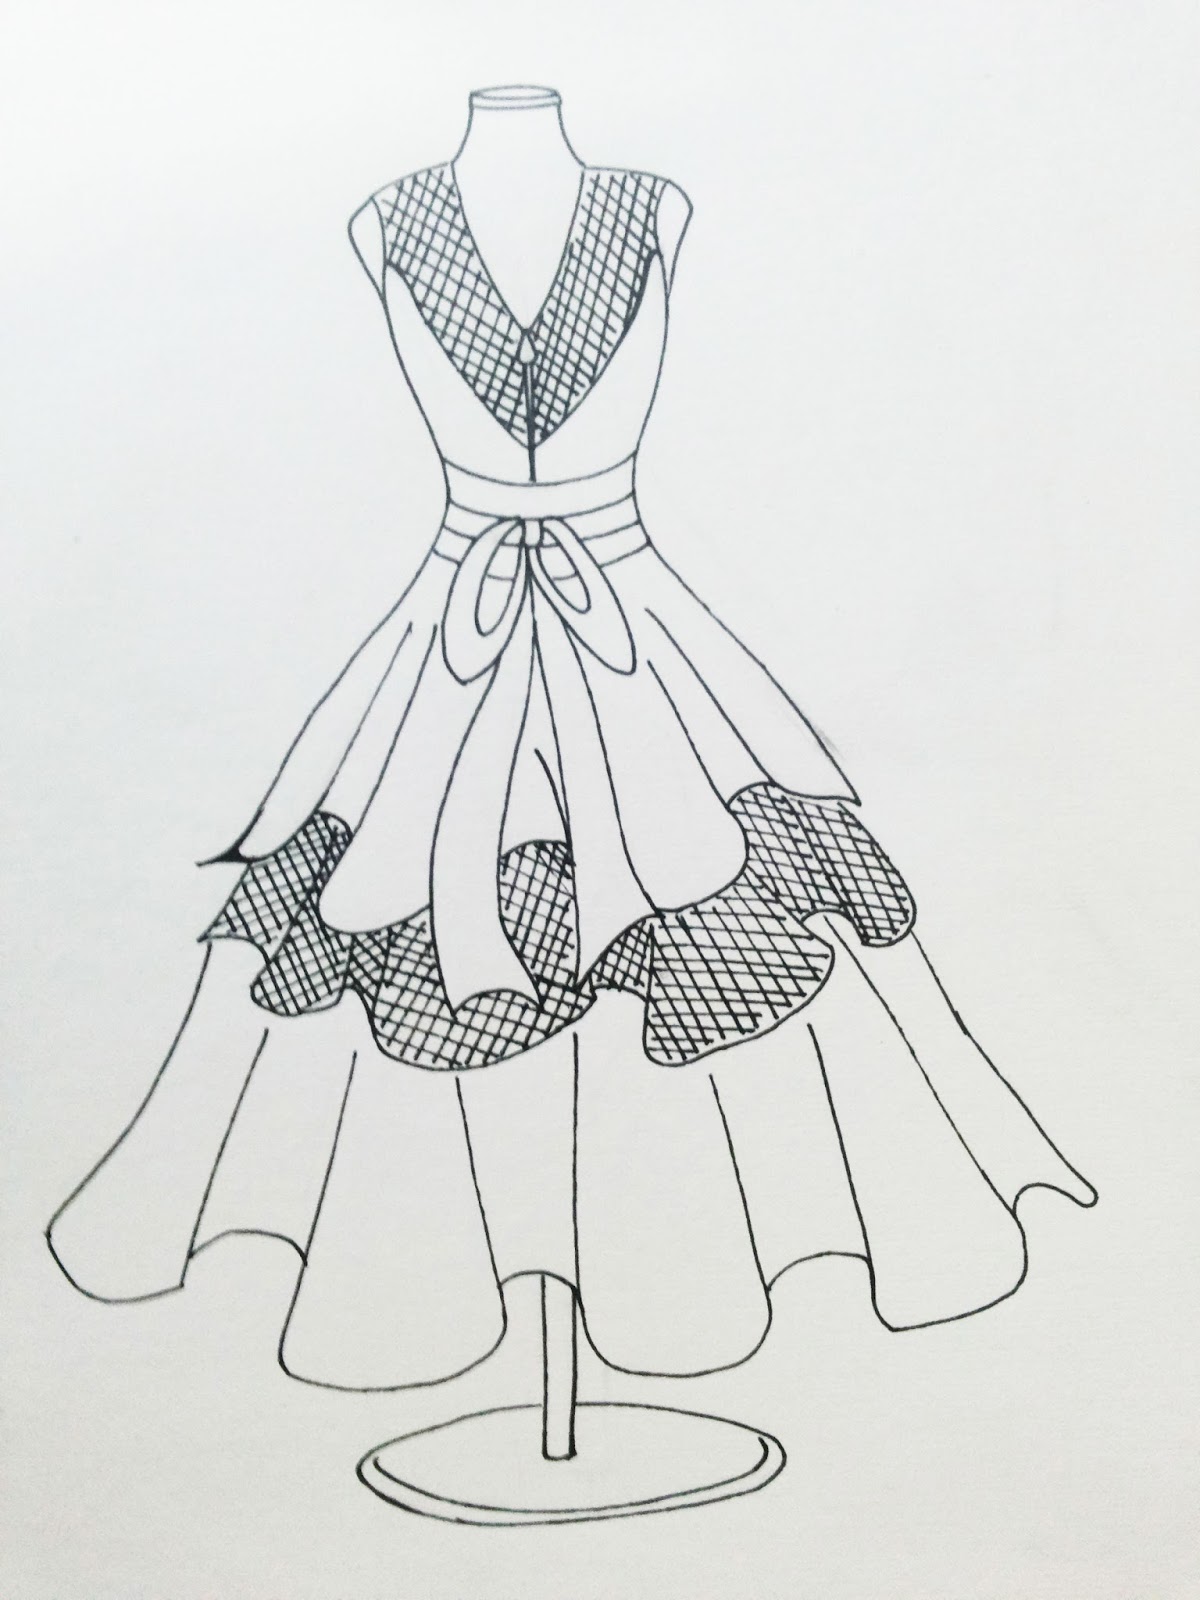 Kumpulan Soal Pelajaran 8 Gambar Desain Sketsa Baju Dress Pendek